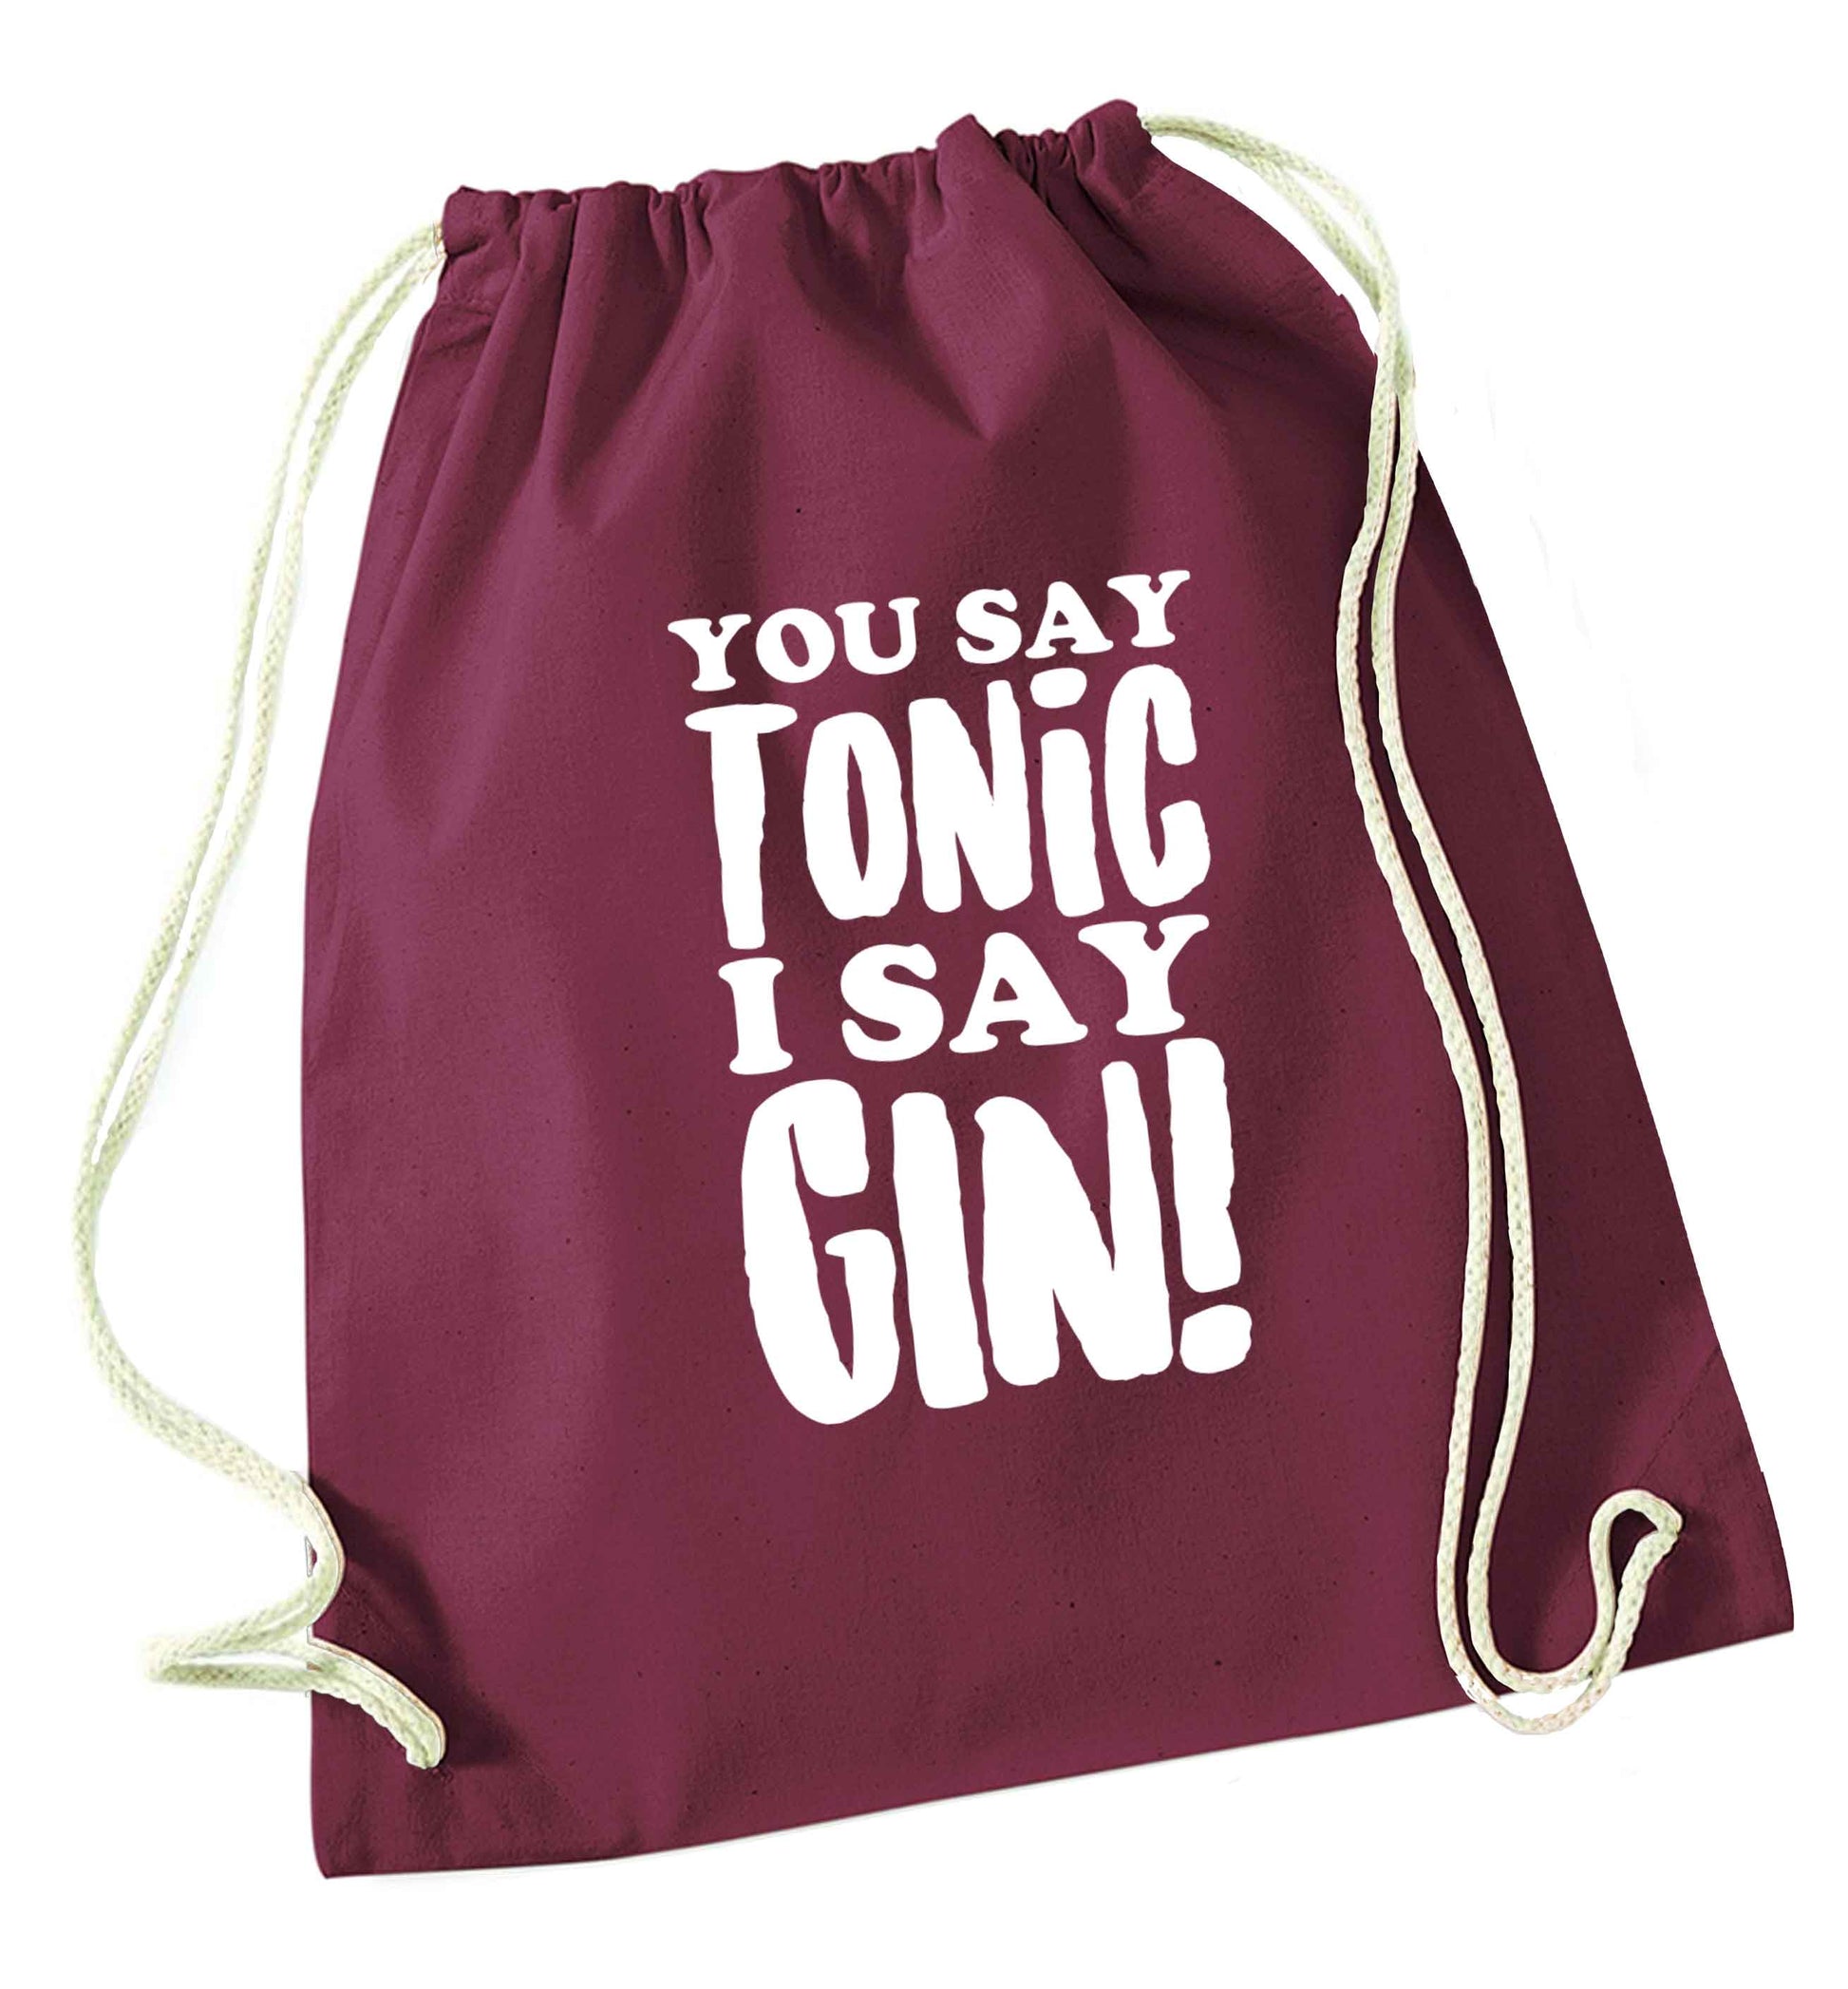 You say tonic I say gin maroon drawstring bag